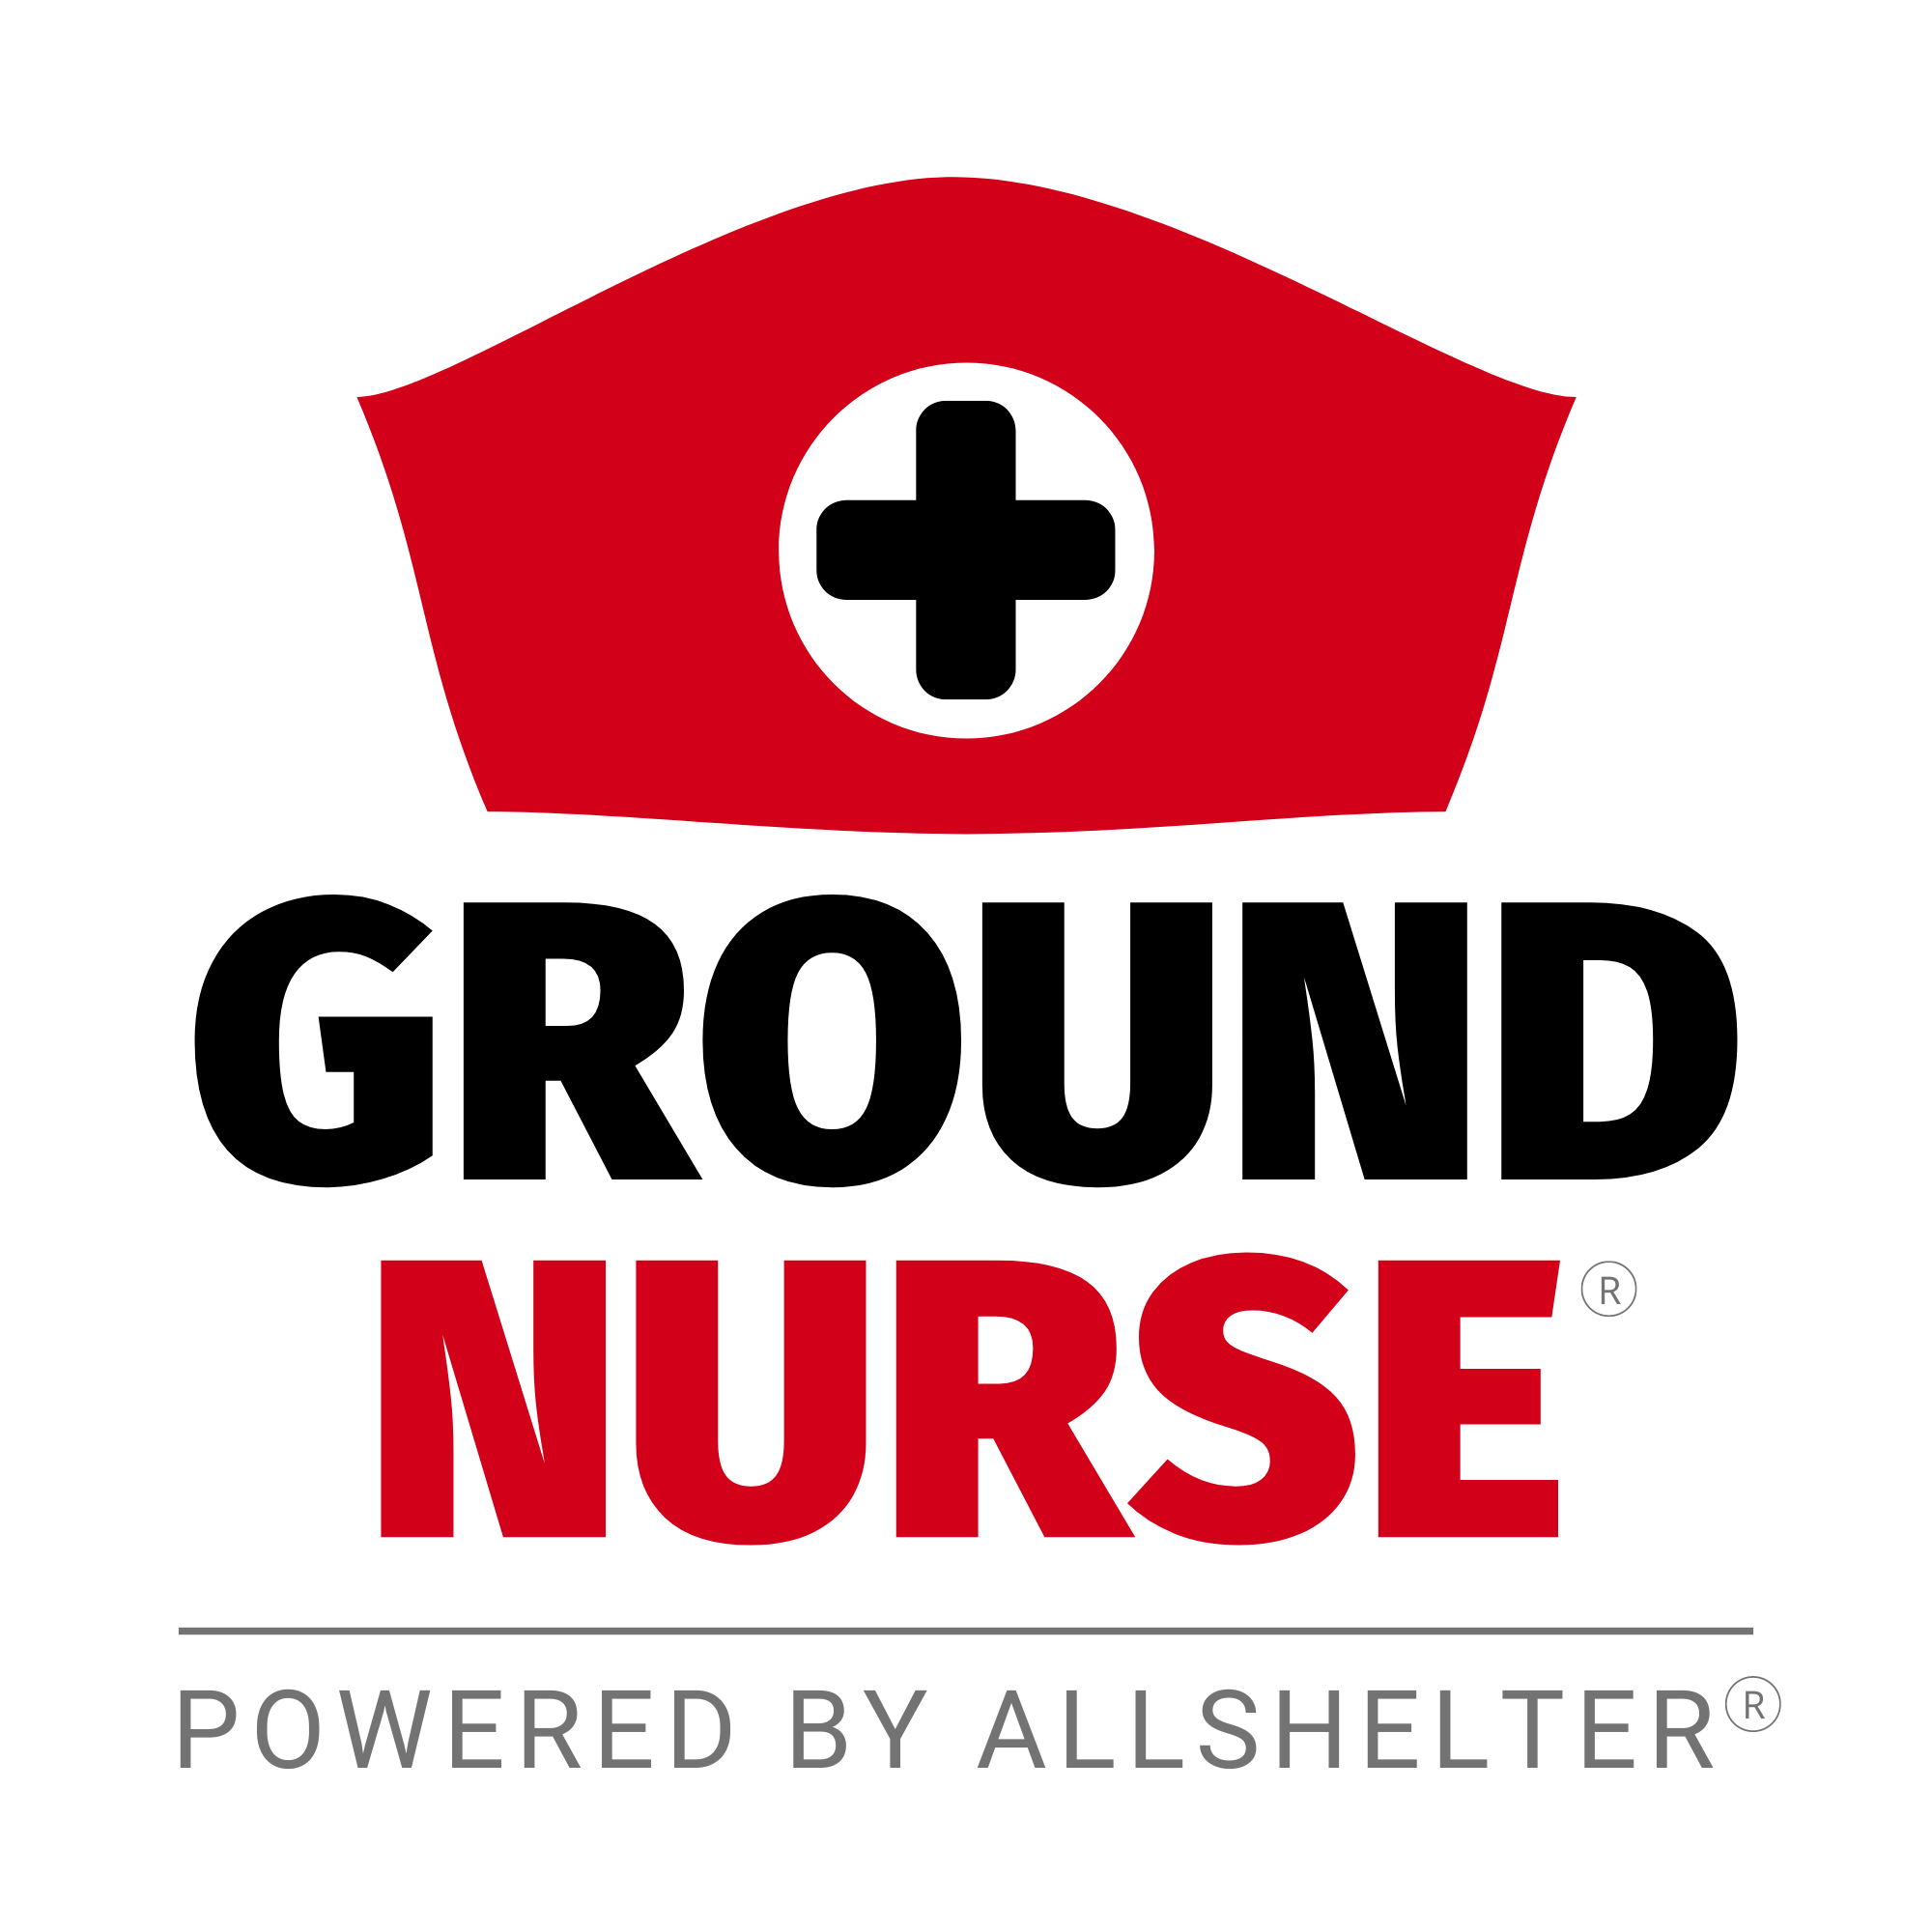 Ground Nurse